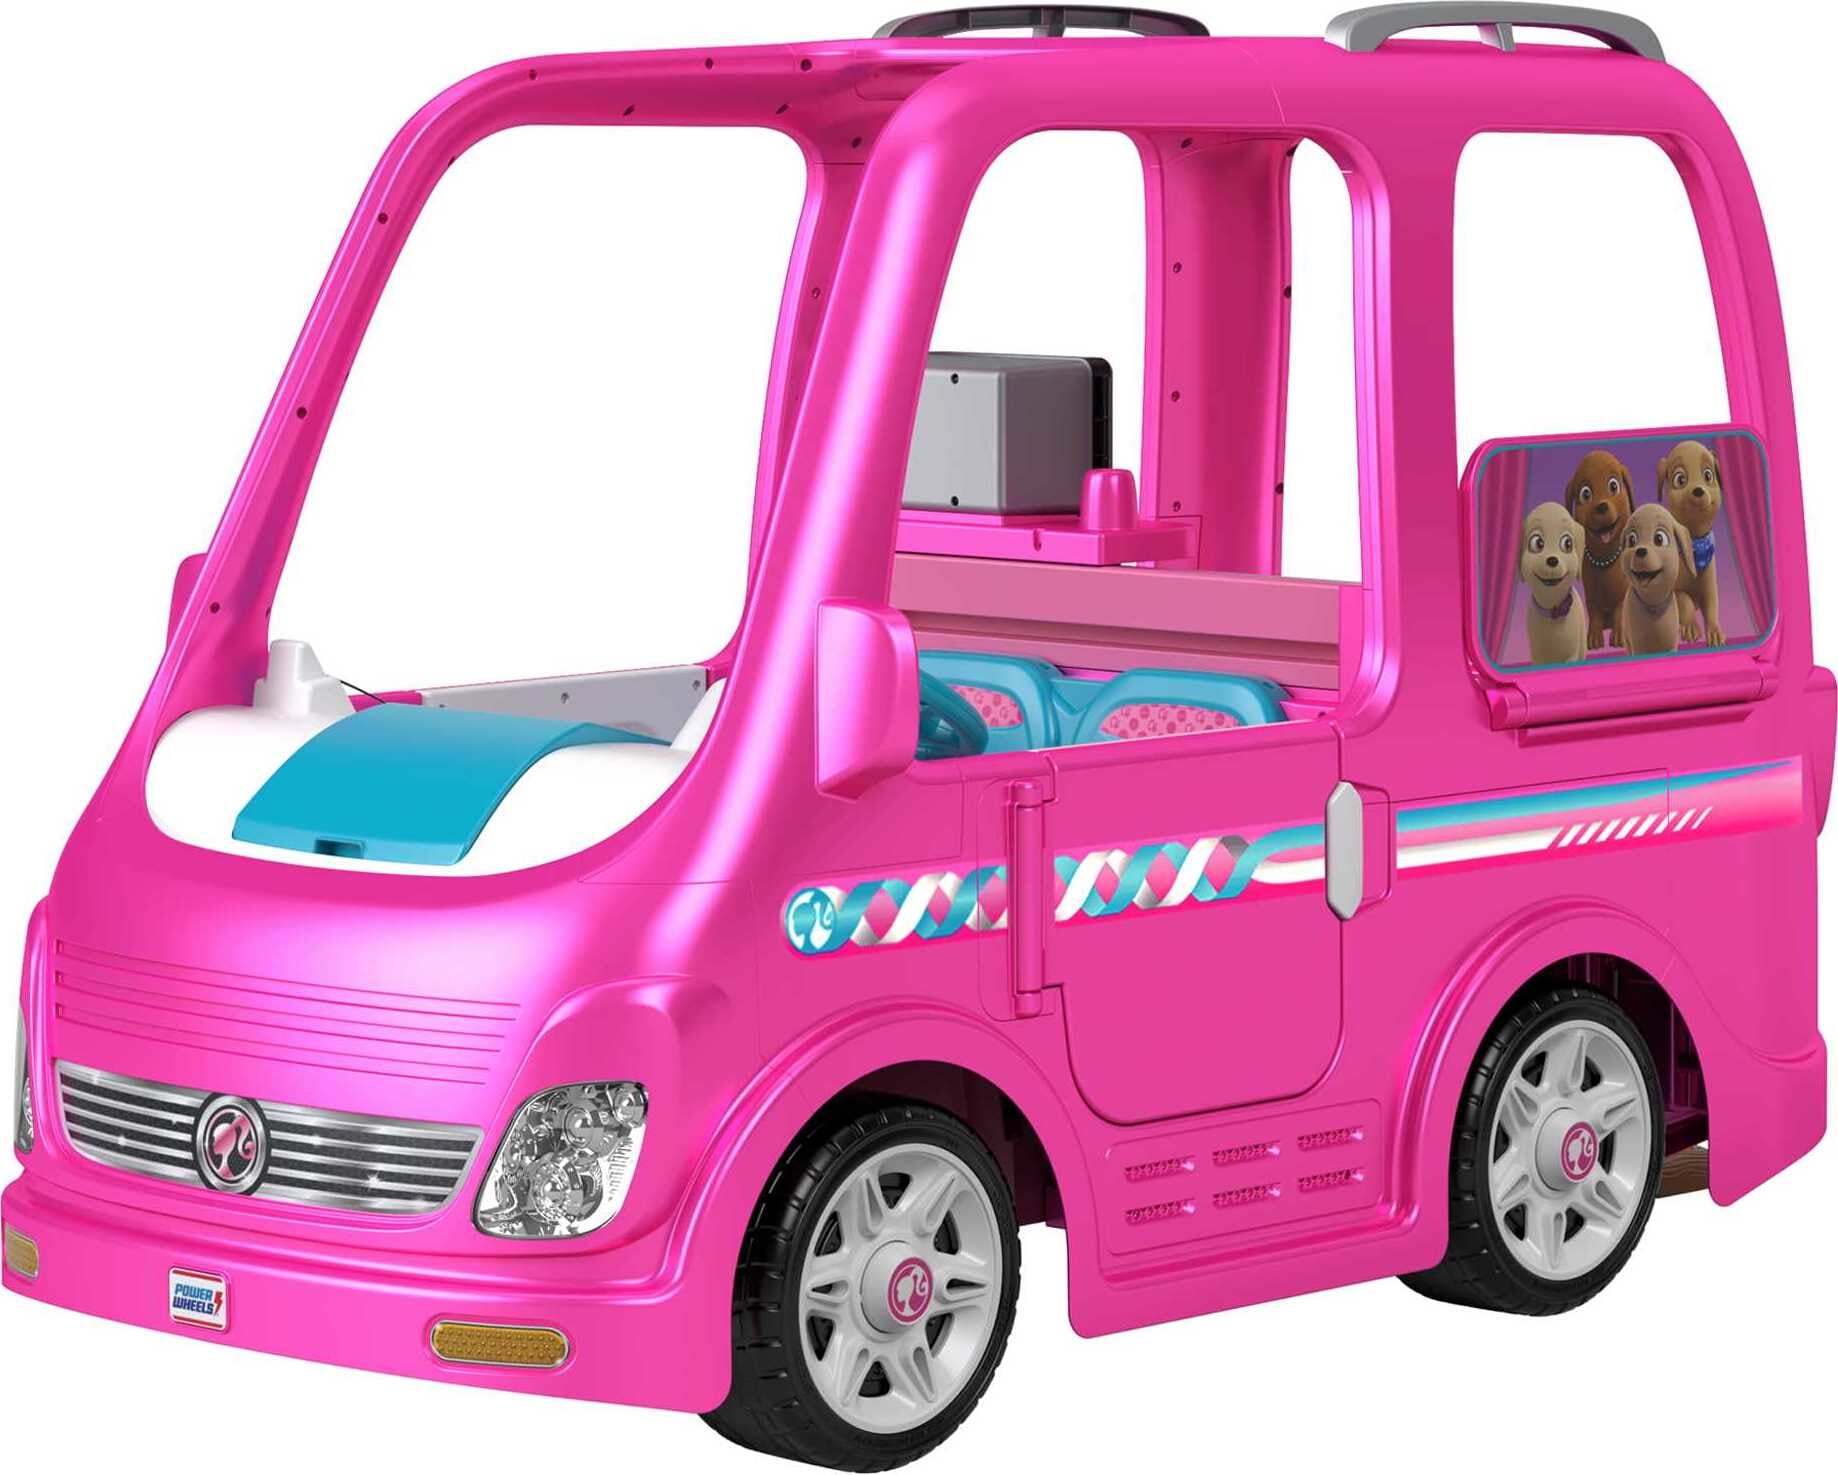 Barbie camper power wheels - baby & kid stuff - by owner - household sale -  craigslist